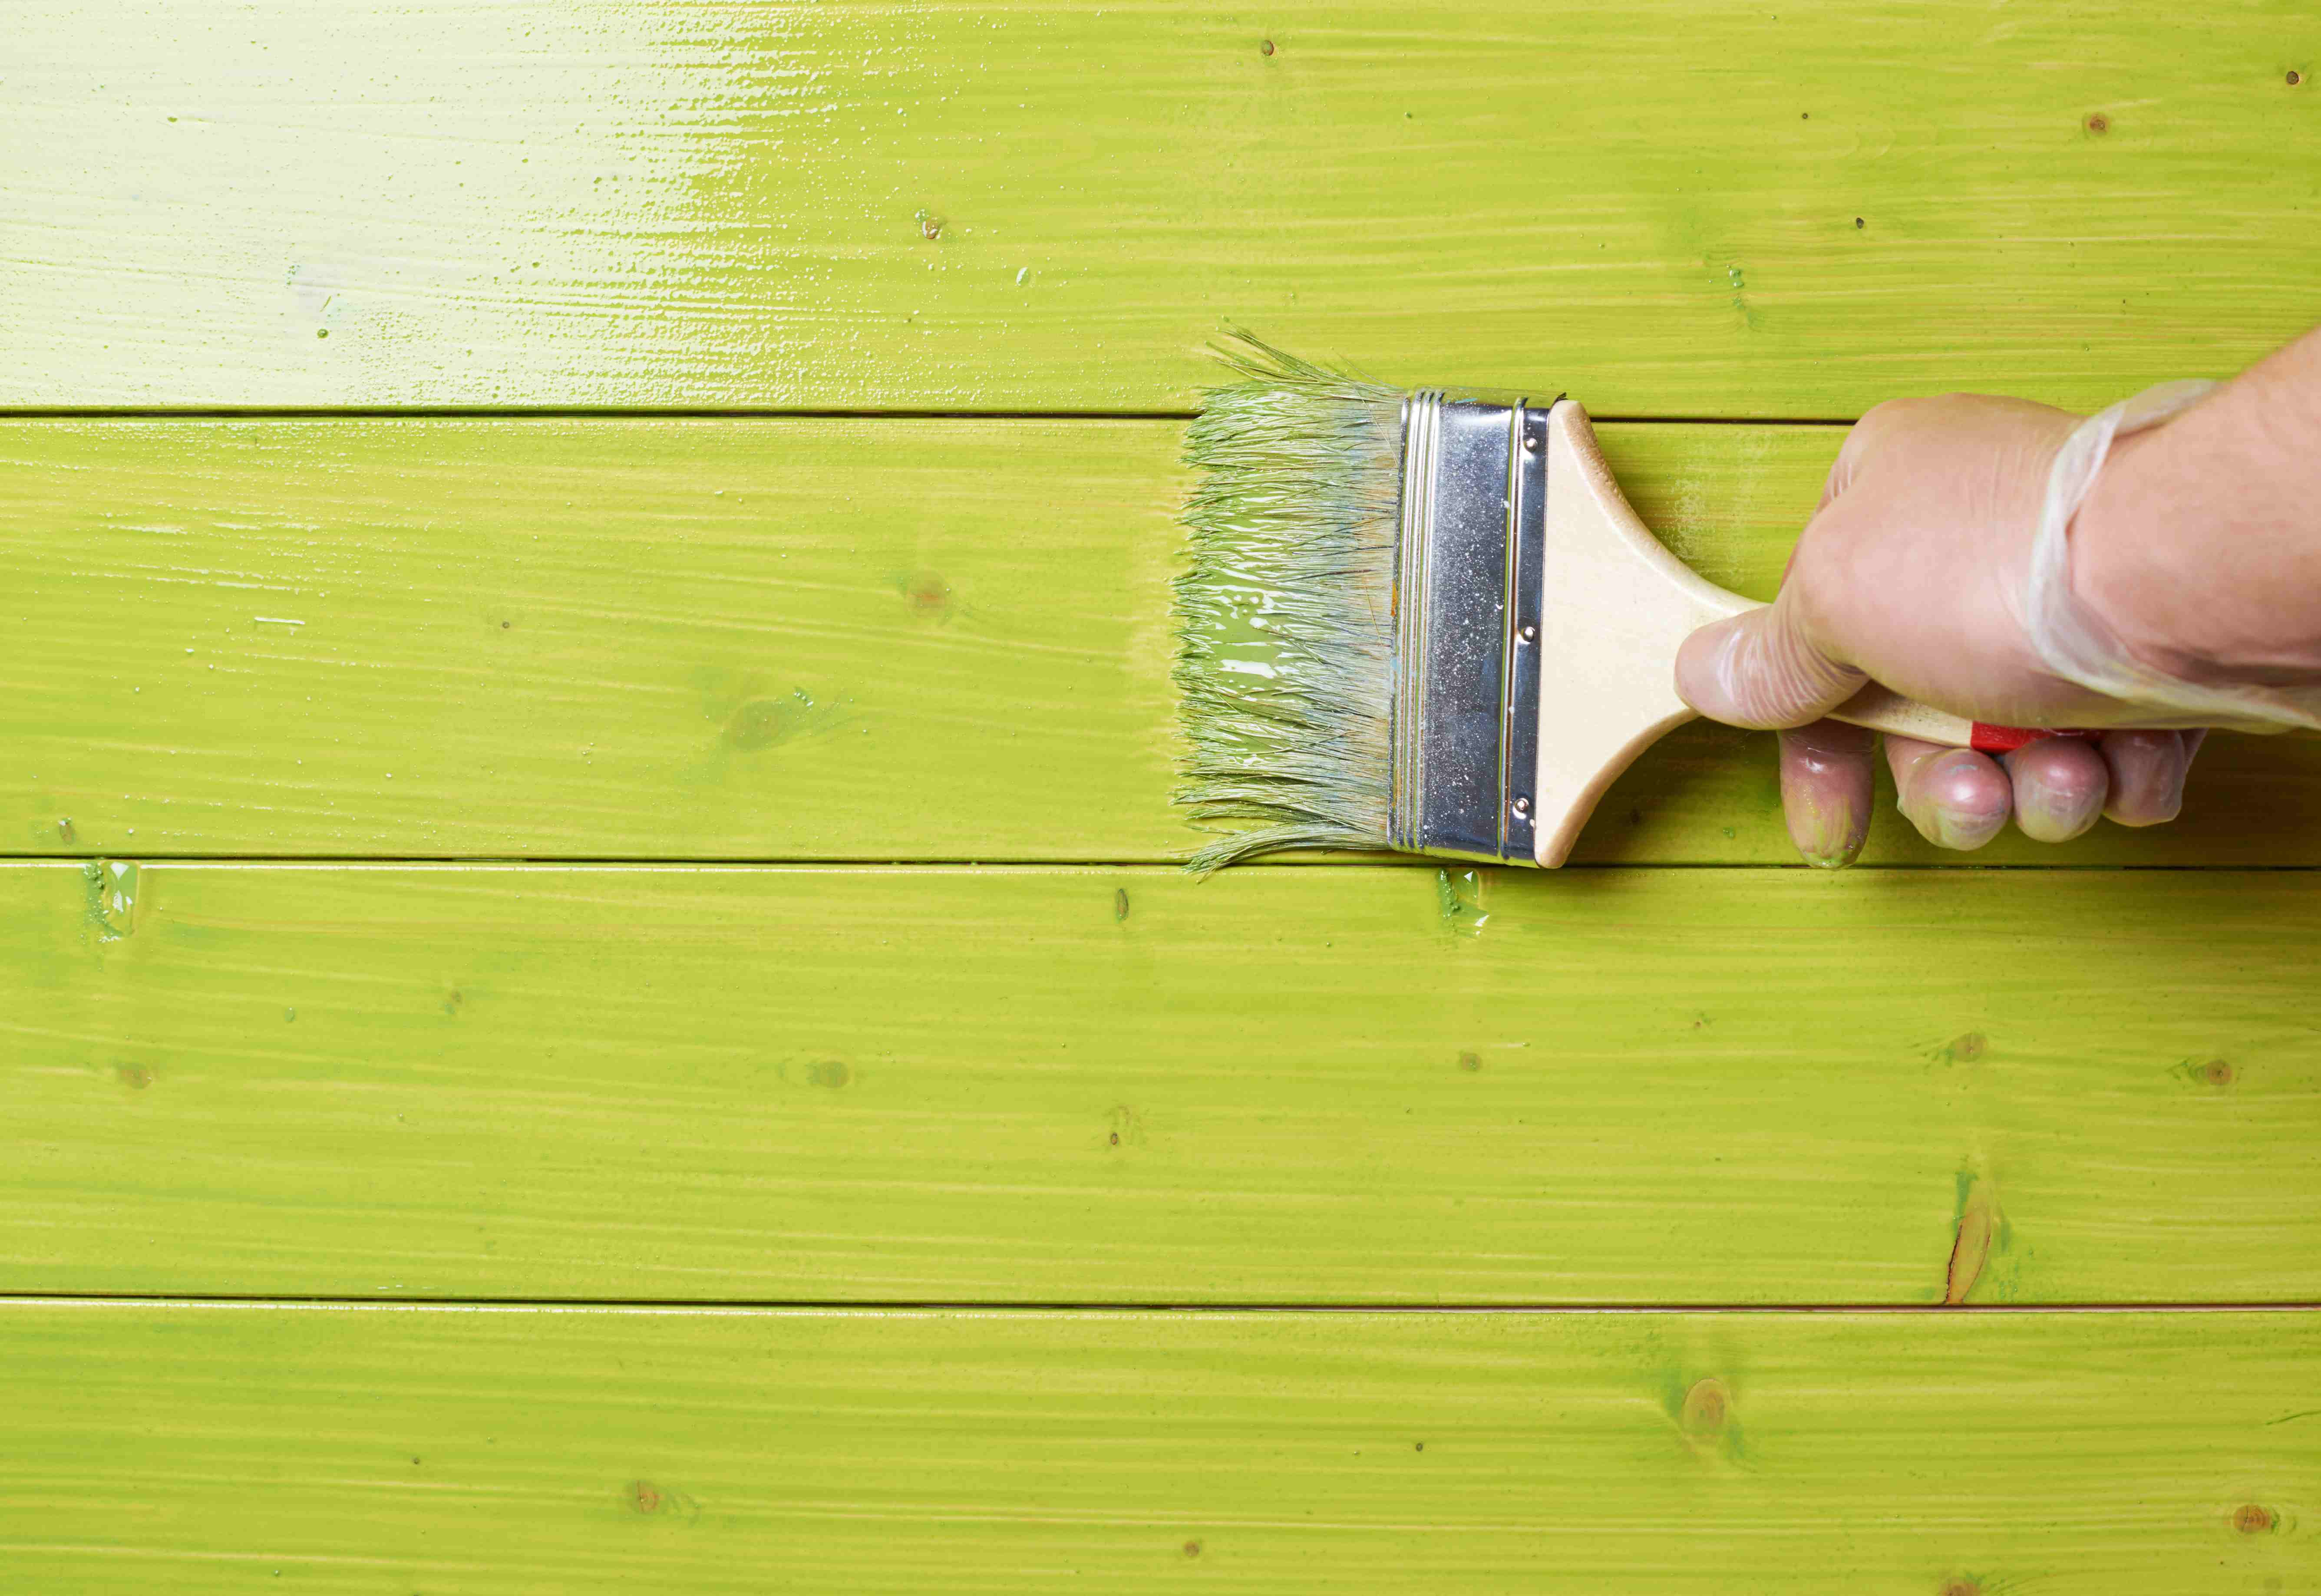 Чем покрасить деревянный пол — материалы, последовательность работ